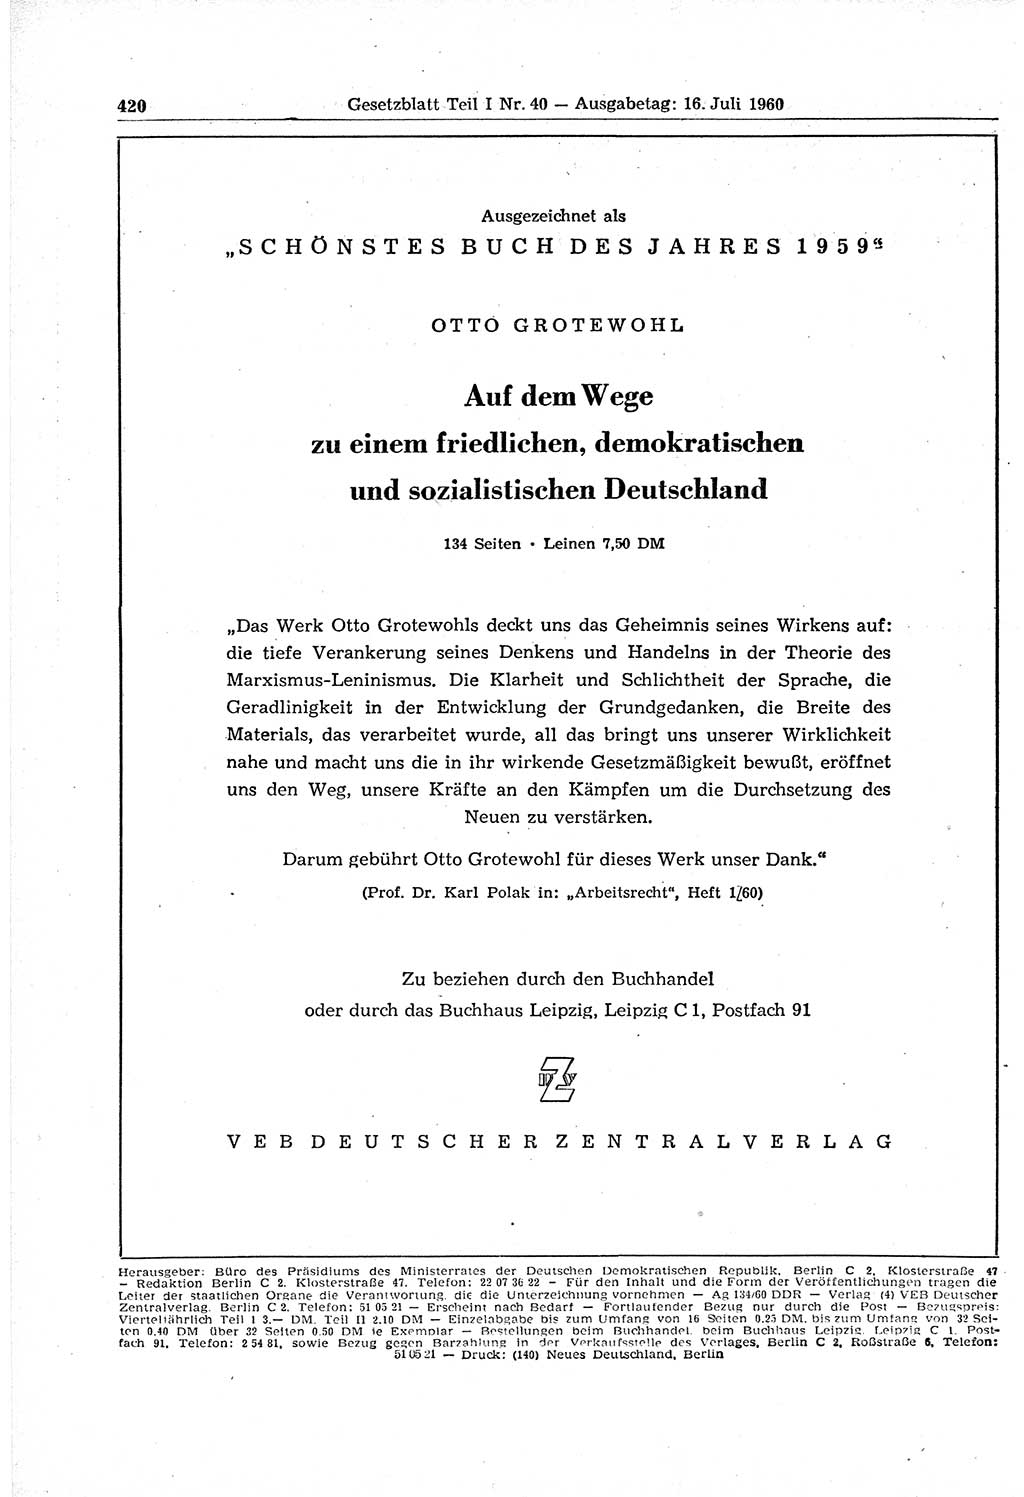 Gesetzblatt (GBl.) der Deutschen Demokratischen Republik (DDR) Teil Ⅰ 1960, Seite 420 (GBl. DDR Ⅰ 1960, S. 420)